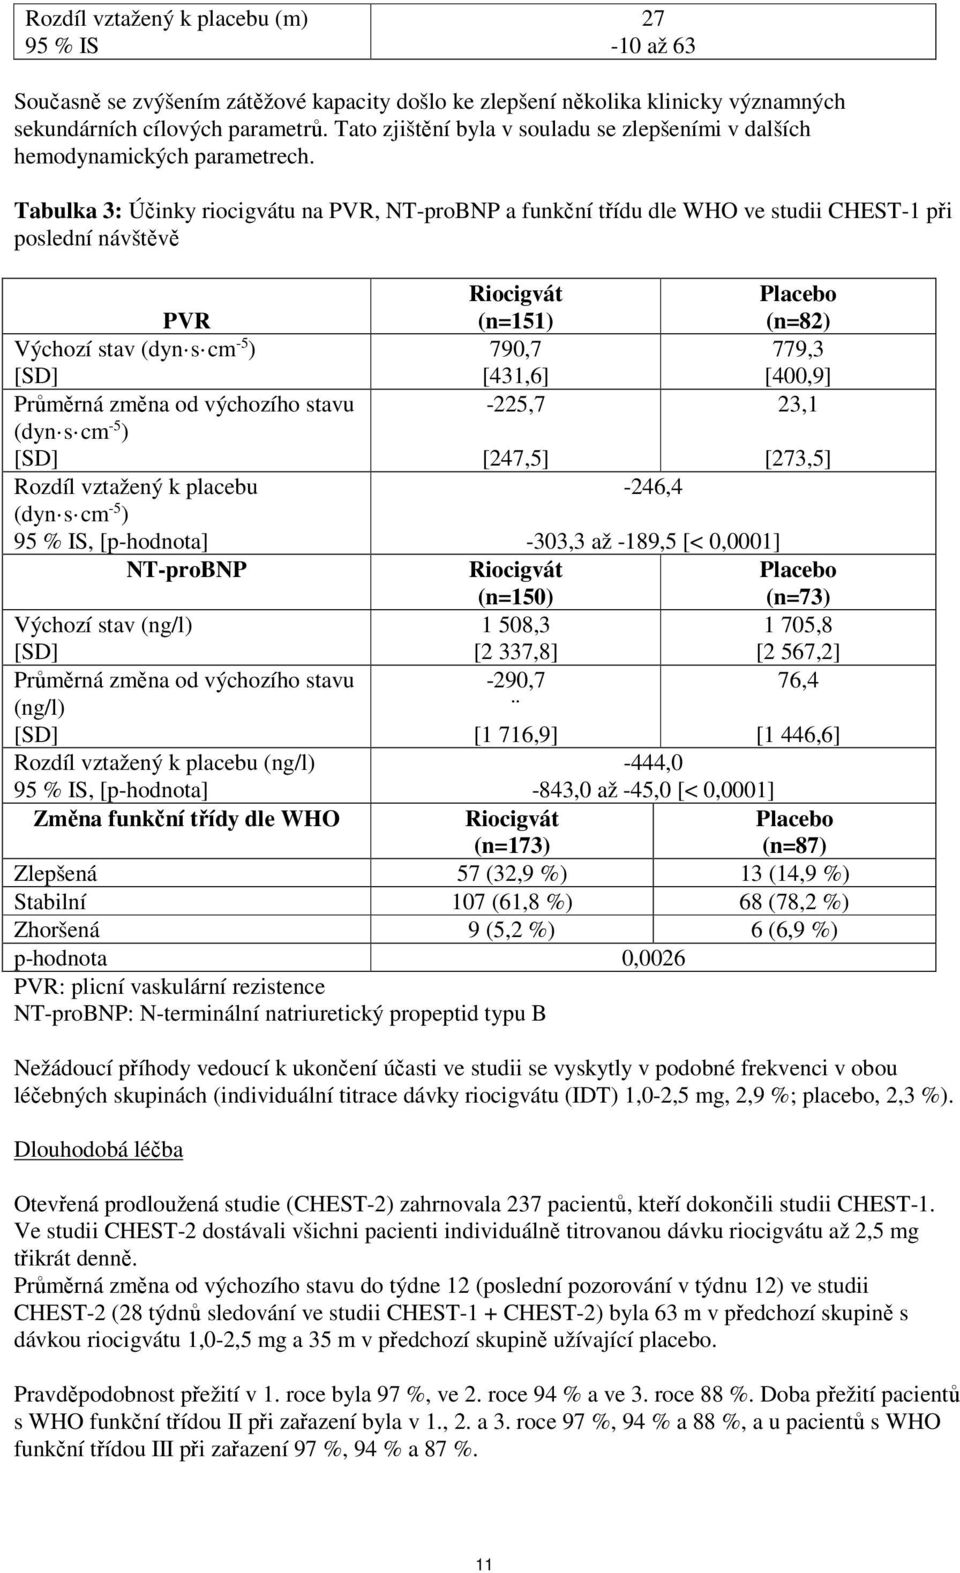 Tabulka 3: Účinky riocigvátu na PVR, NT-proBNP a funkční třídu dle WHO ve studii CHEST-1 při poslední návštěvě PVR Výchozí stav (dyn s cm -5 ) Průměrná změna od výchozího stavu (dyn s cm -5 ) Rozdíl